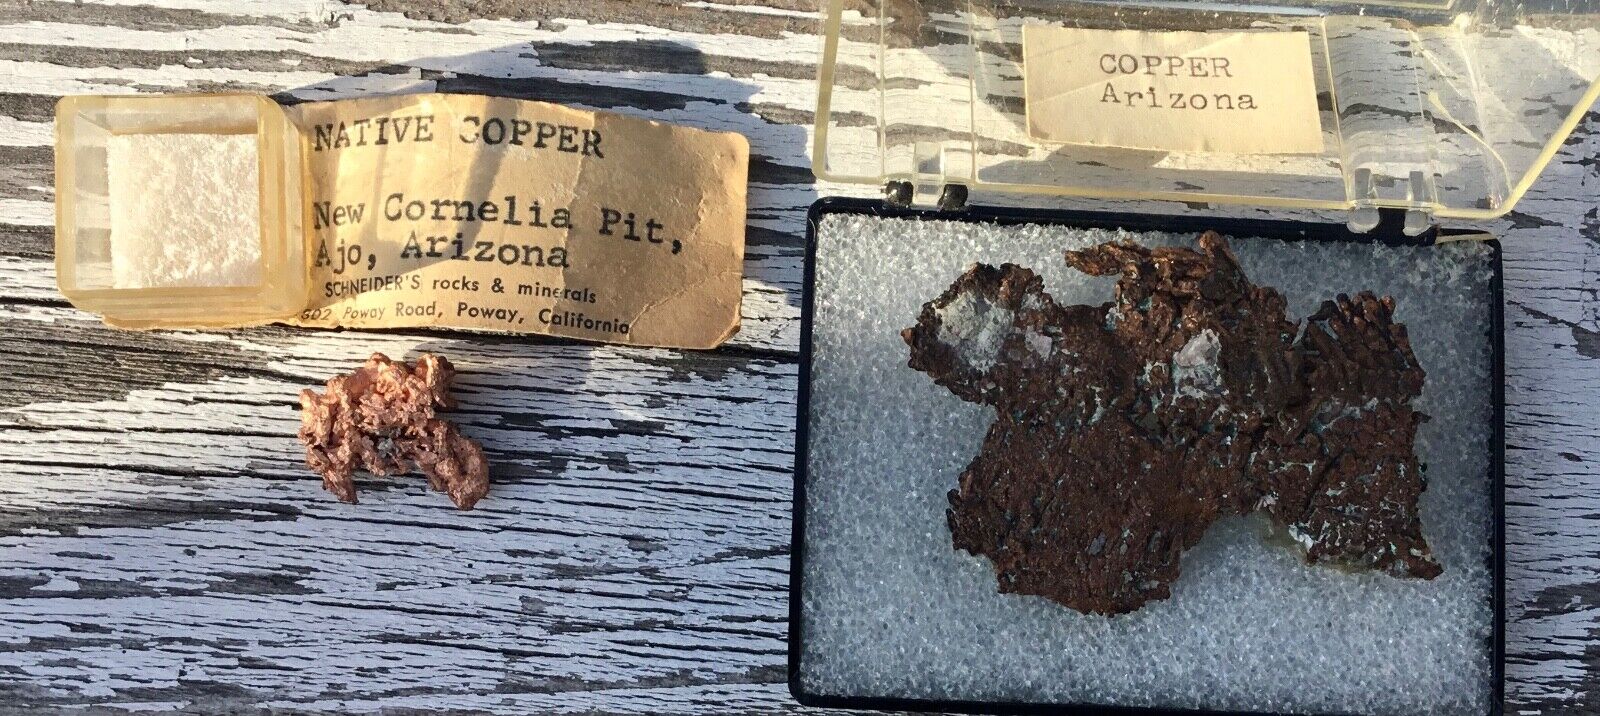 2 Native Copper Samples From Arizona New Cornelia Pit Ajo AZ 2 1/2 inch 28 Grams